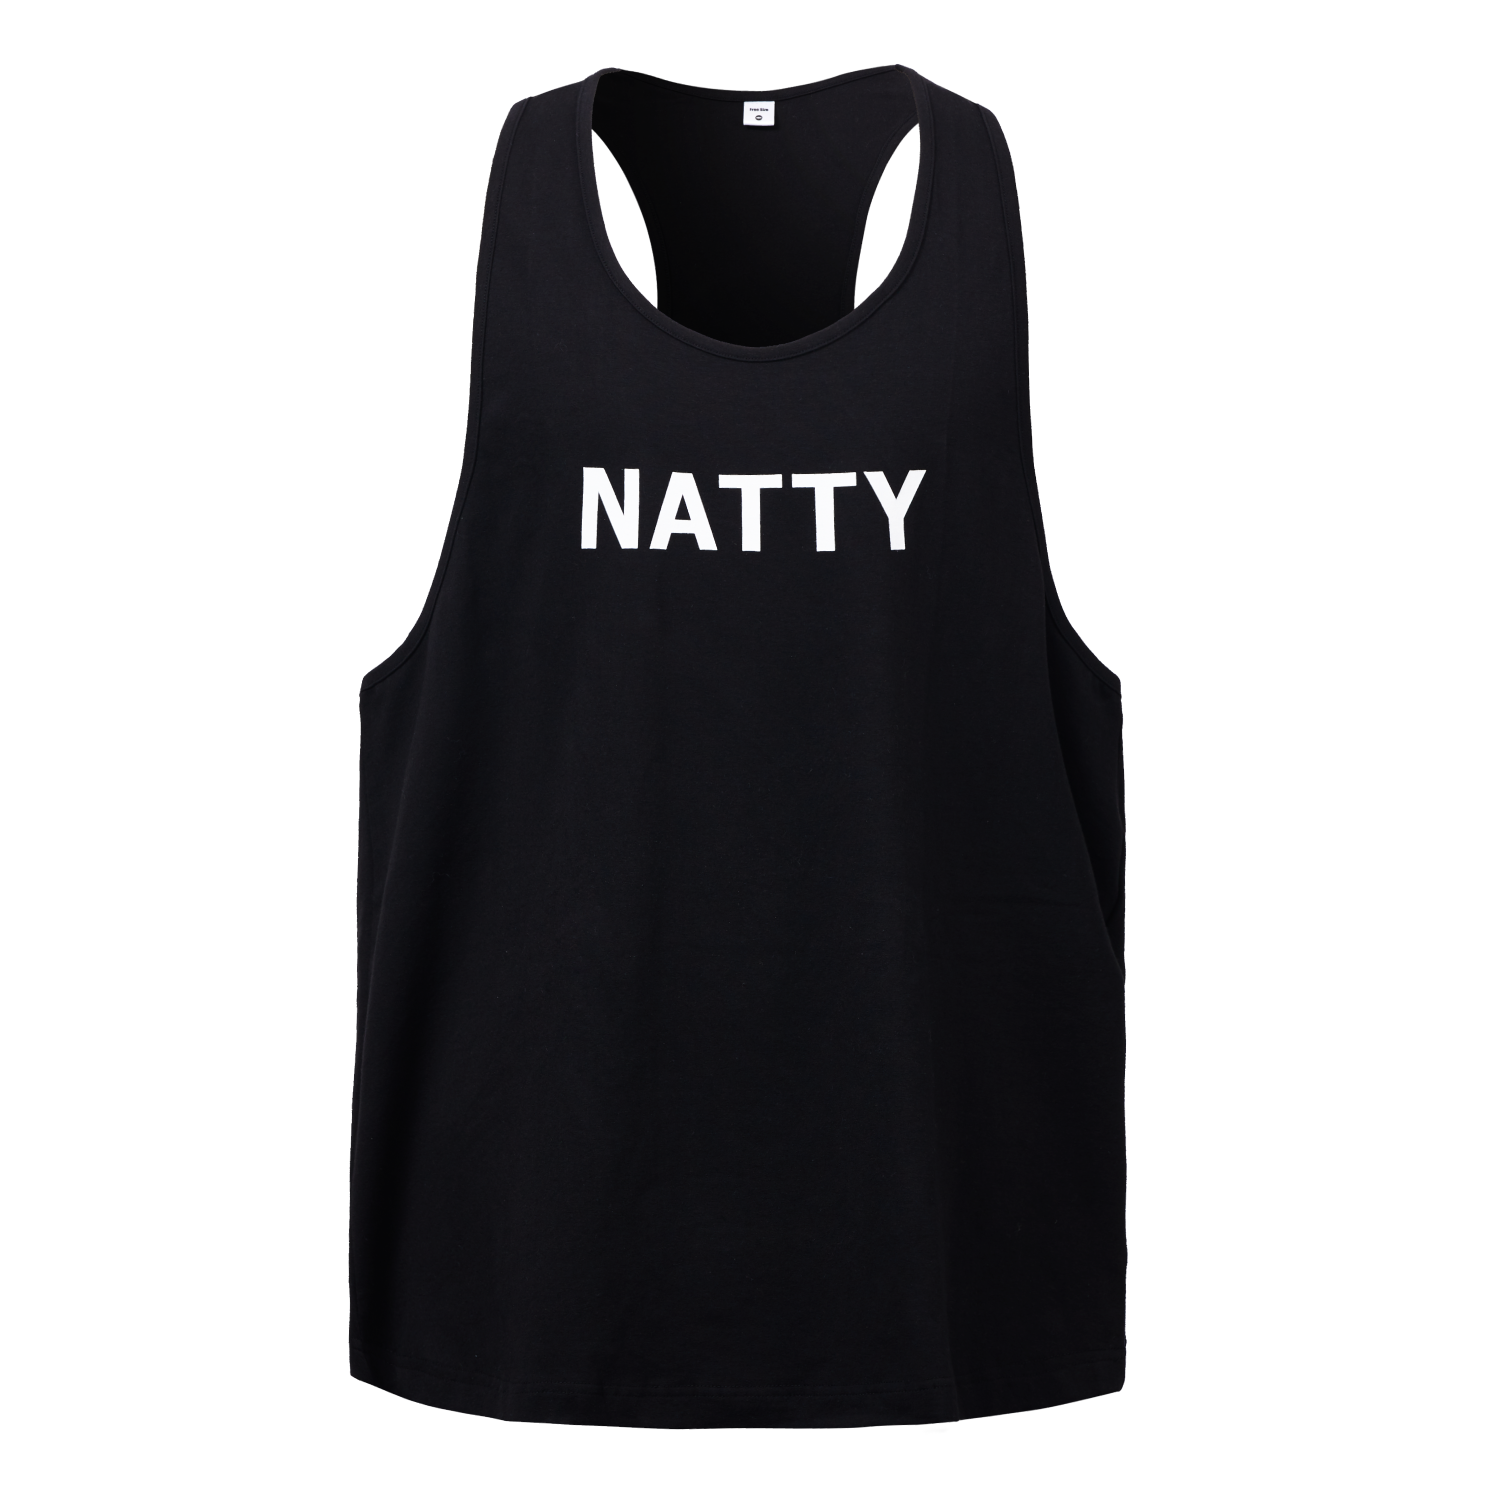 NATTY(네티) ᴏʀɪɢɪɴᴀʟ 슬리브리스/나시